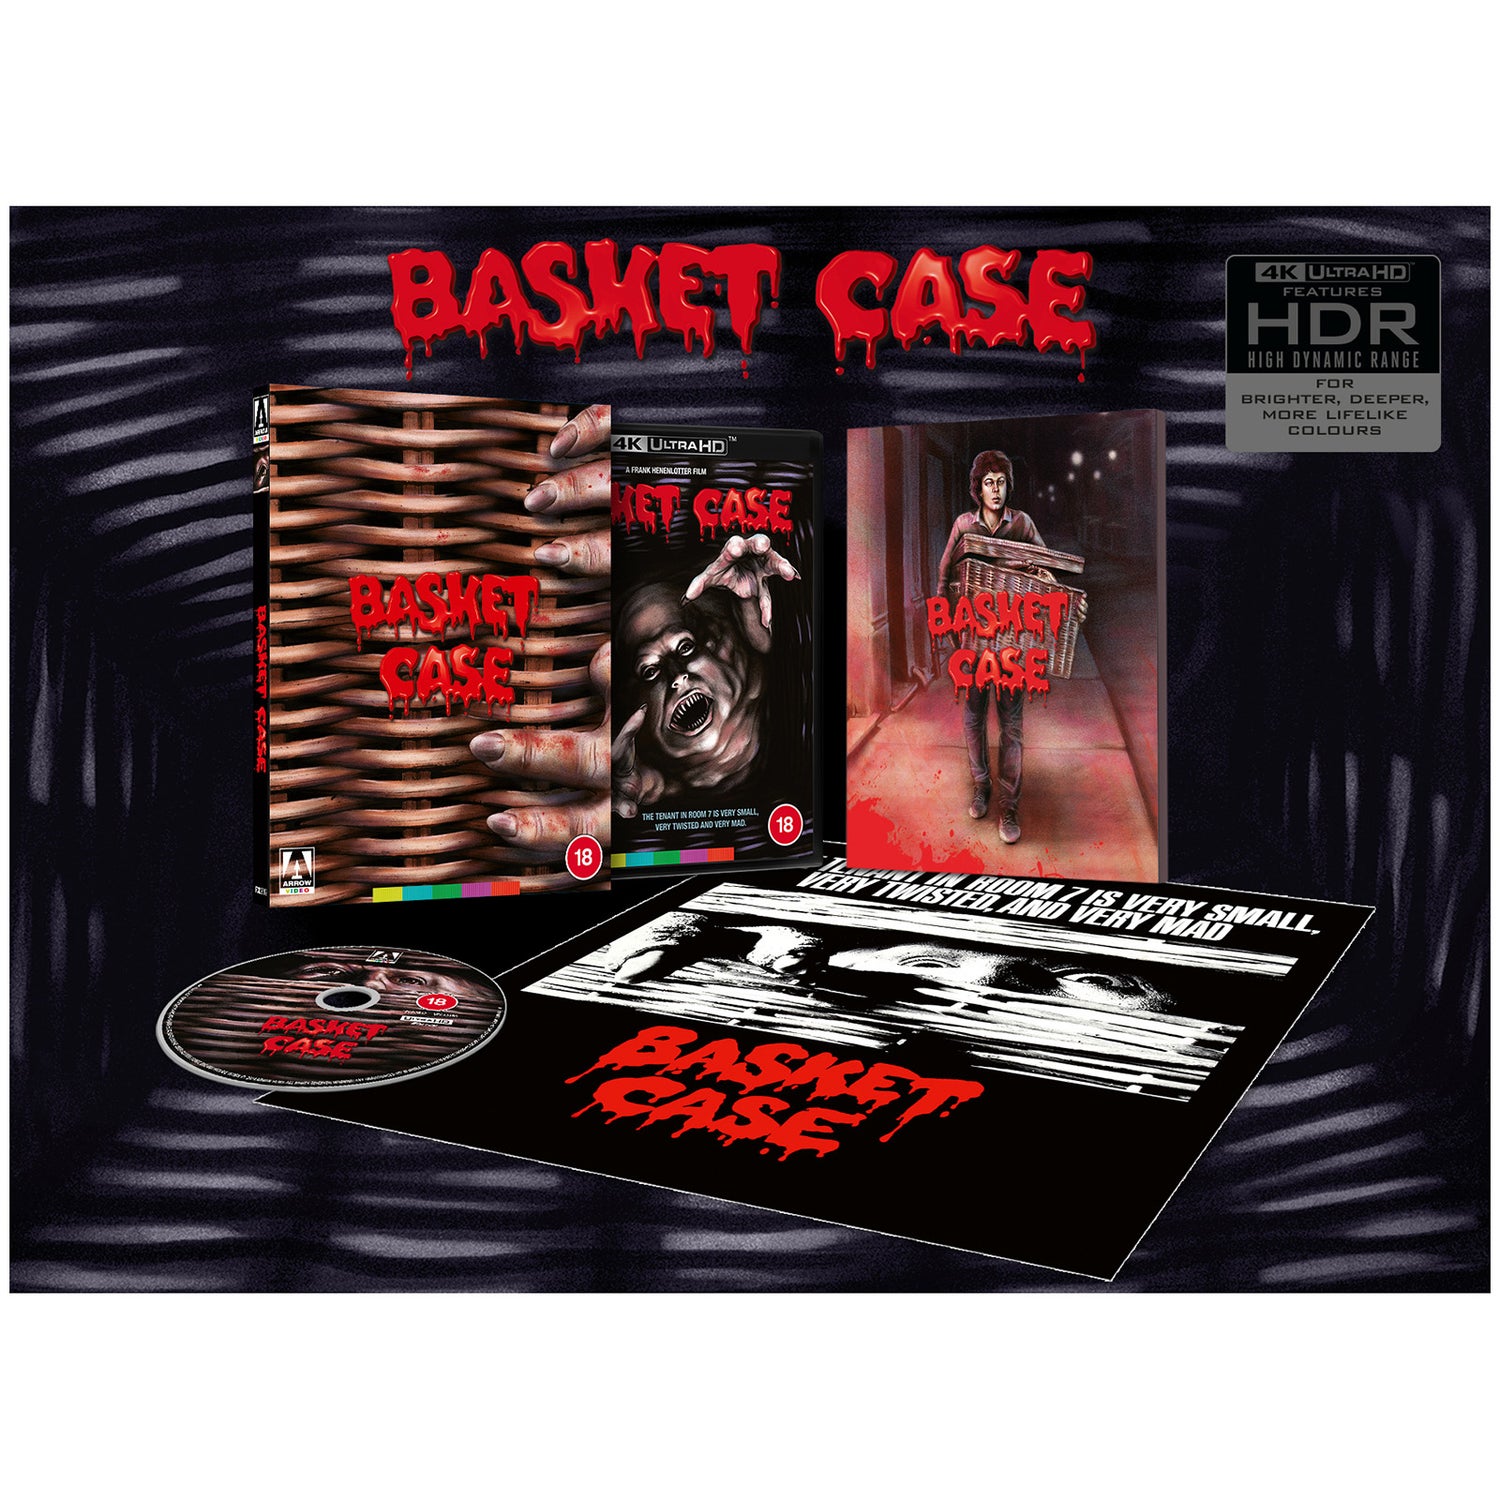 Basket Case Limited Edition 4K UHD